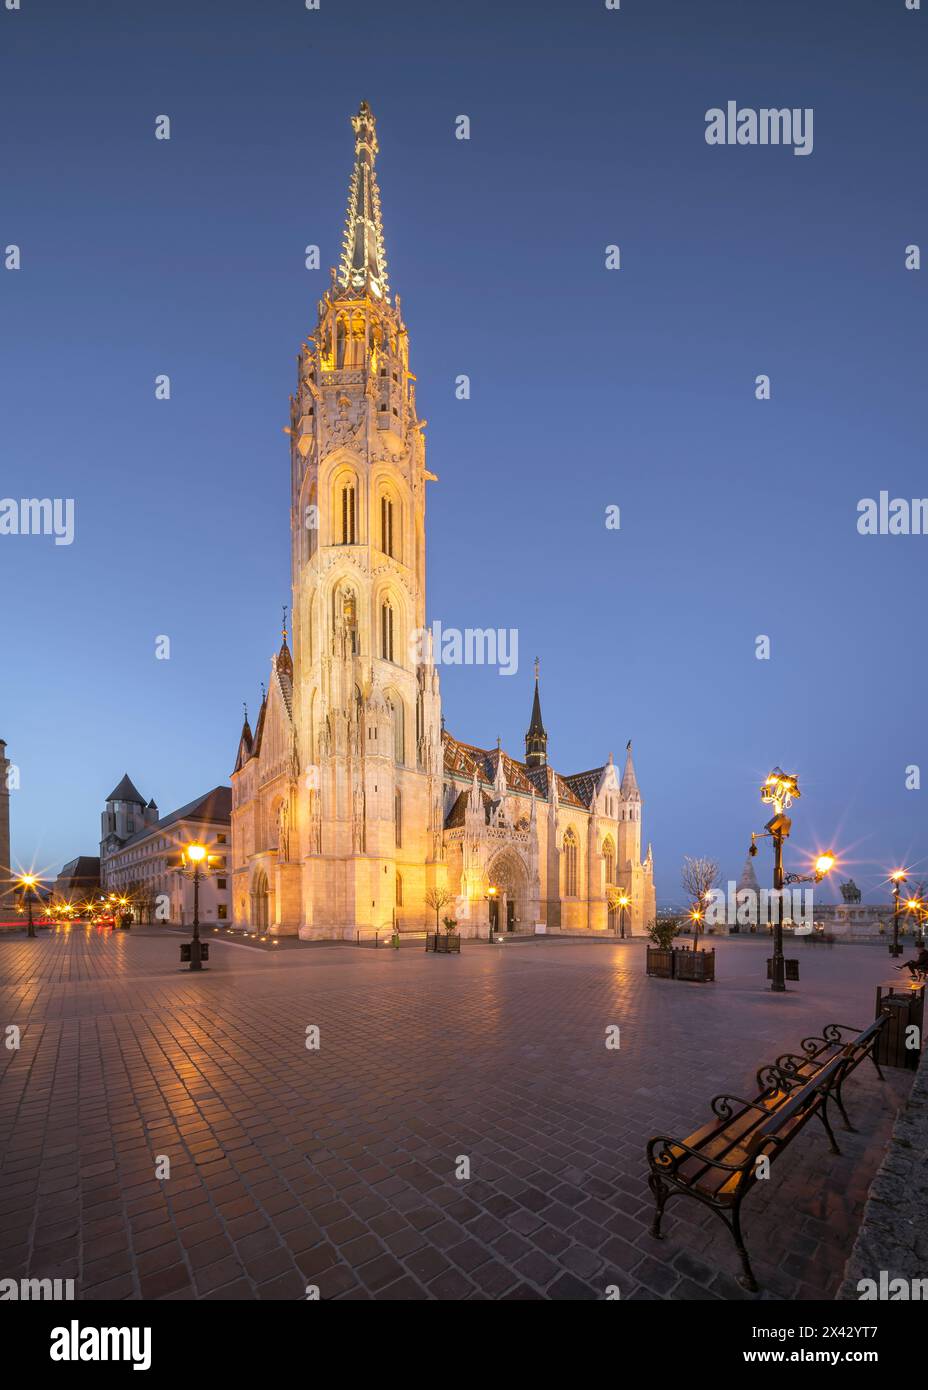 Abendliche Stadtlandschaft über Budapest mit der beleuchteten Matthiaskirche. Erstaunliche Attraktion im Burgviertel Buda neben der Fishermans Bastion. Stockfoto